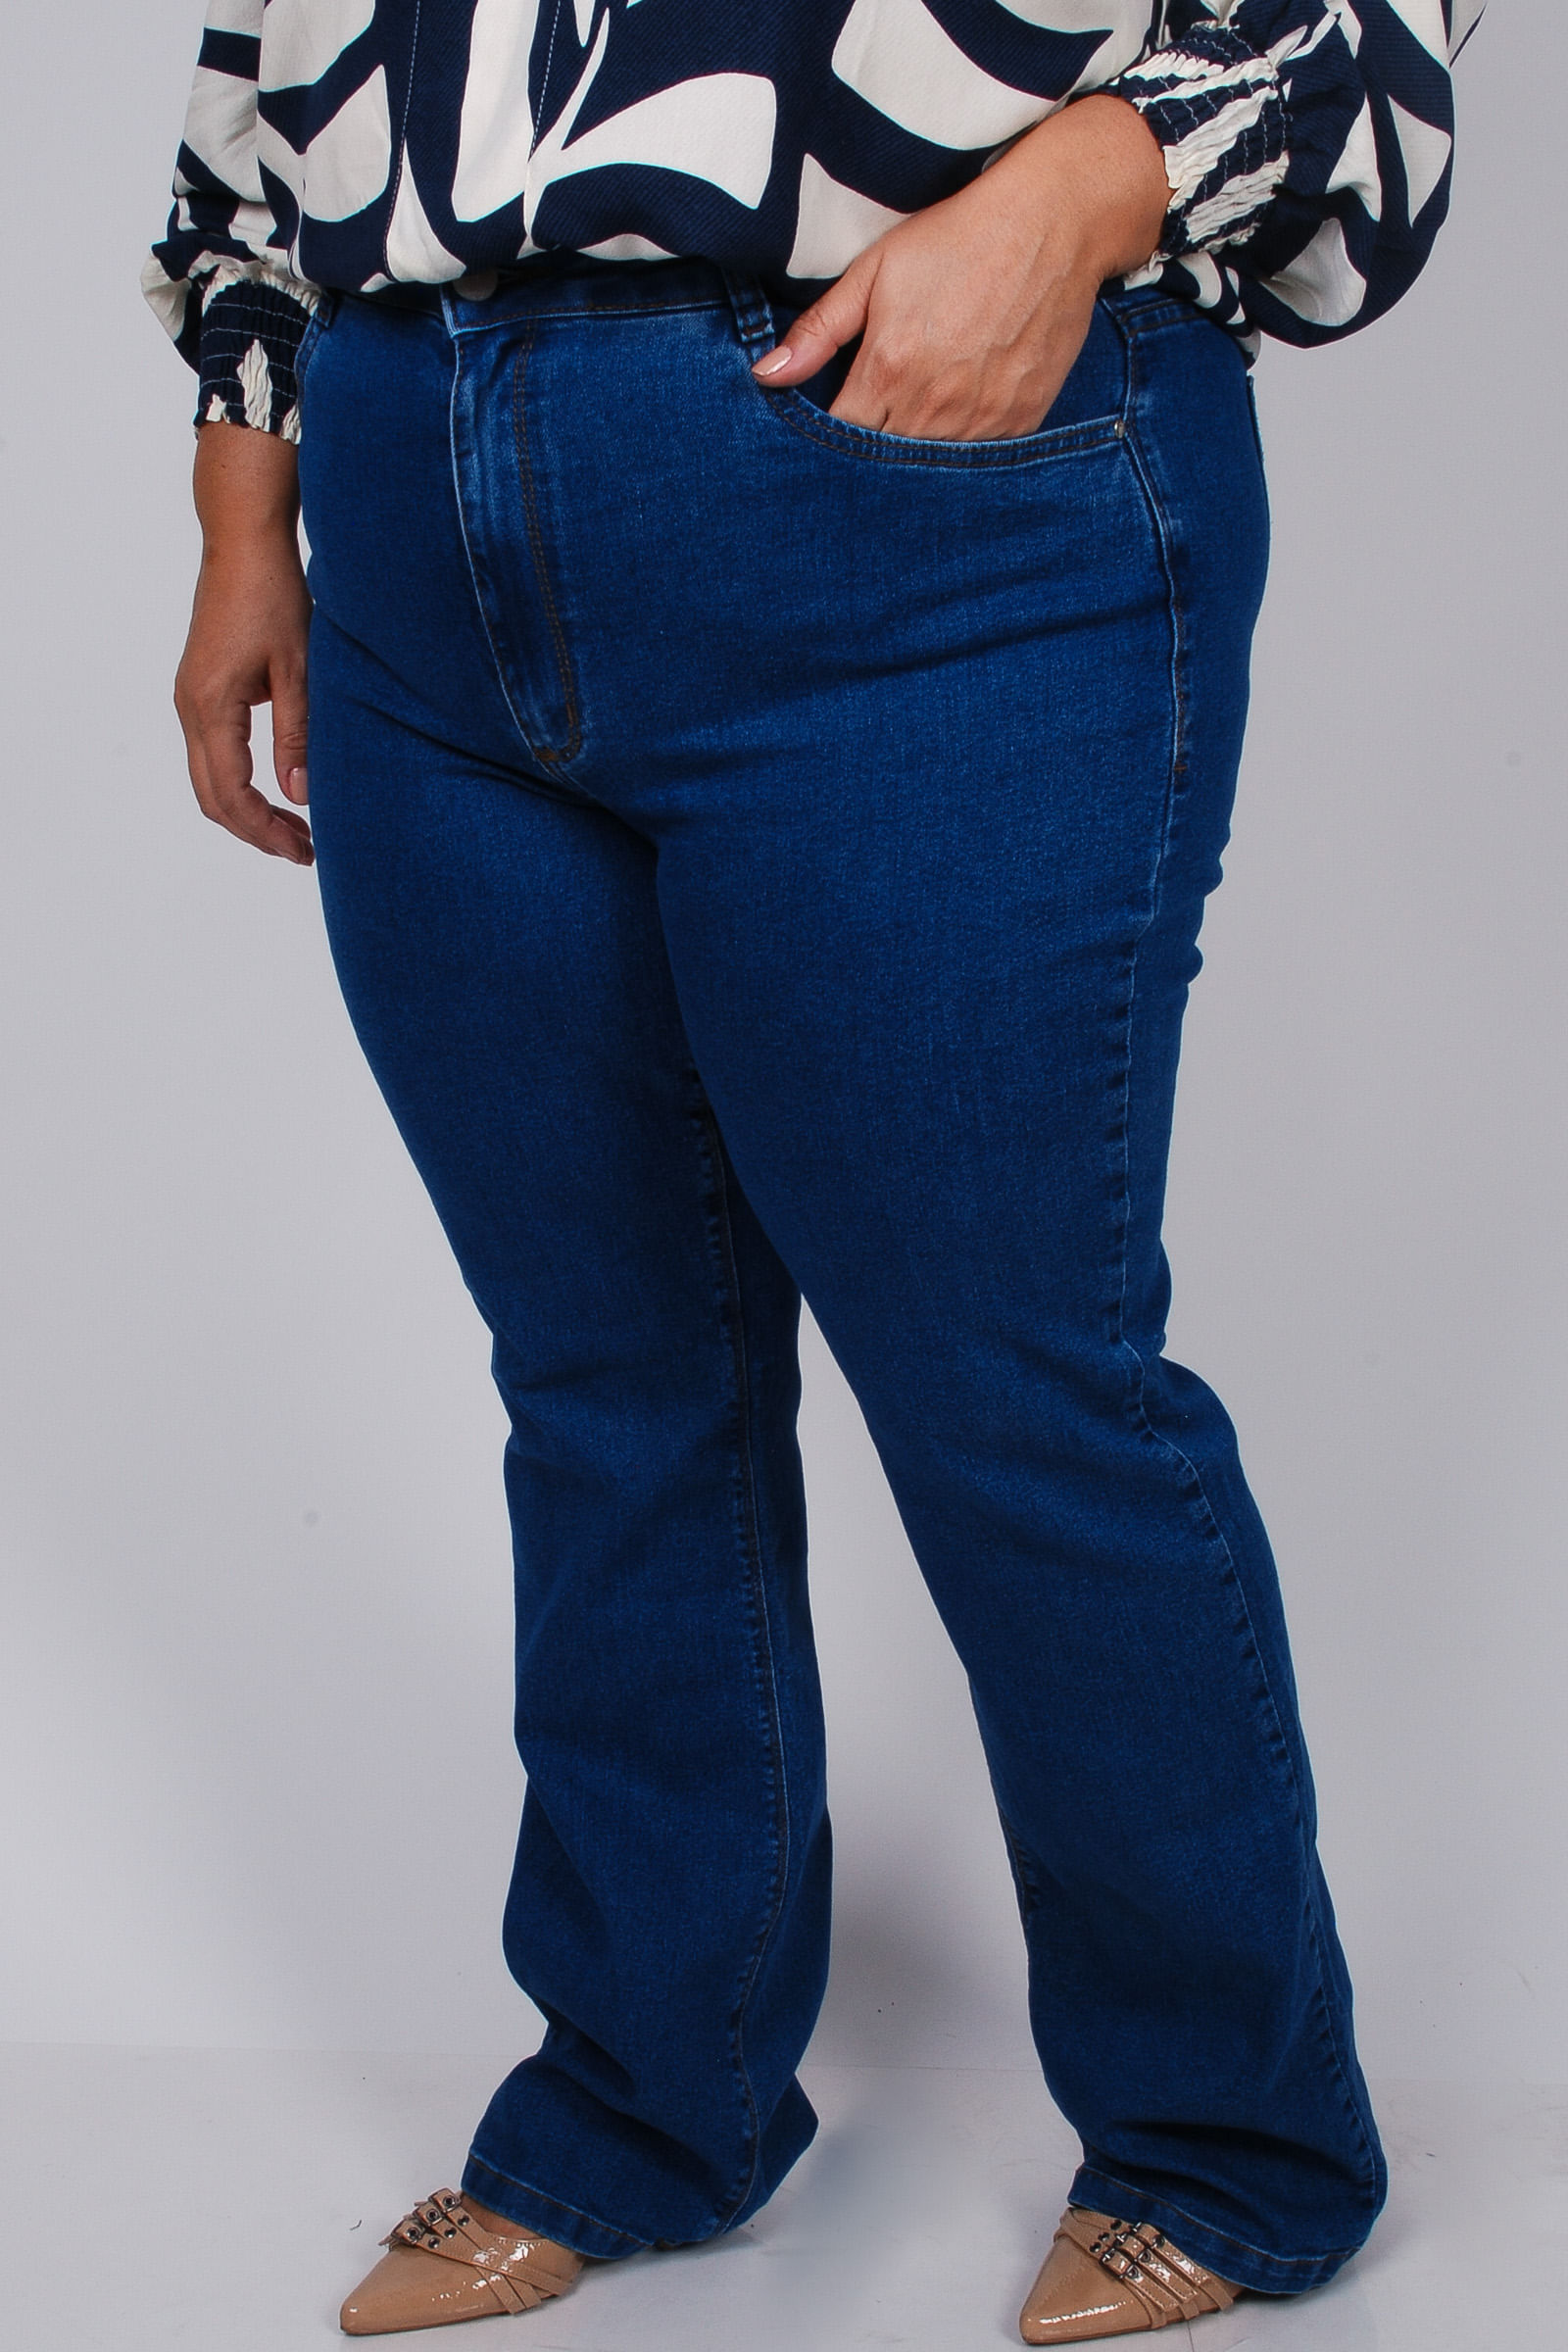 Calca-flare-jeans-com-elastano_0102_1